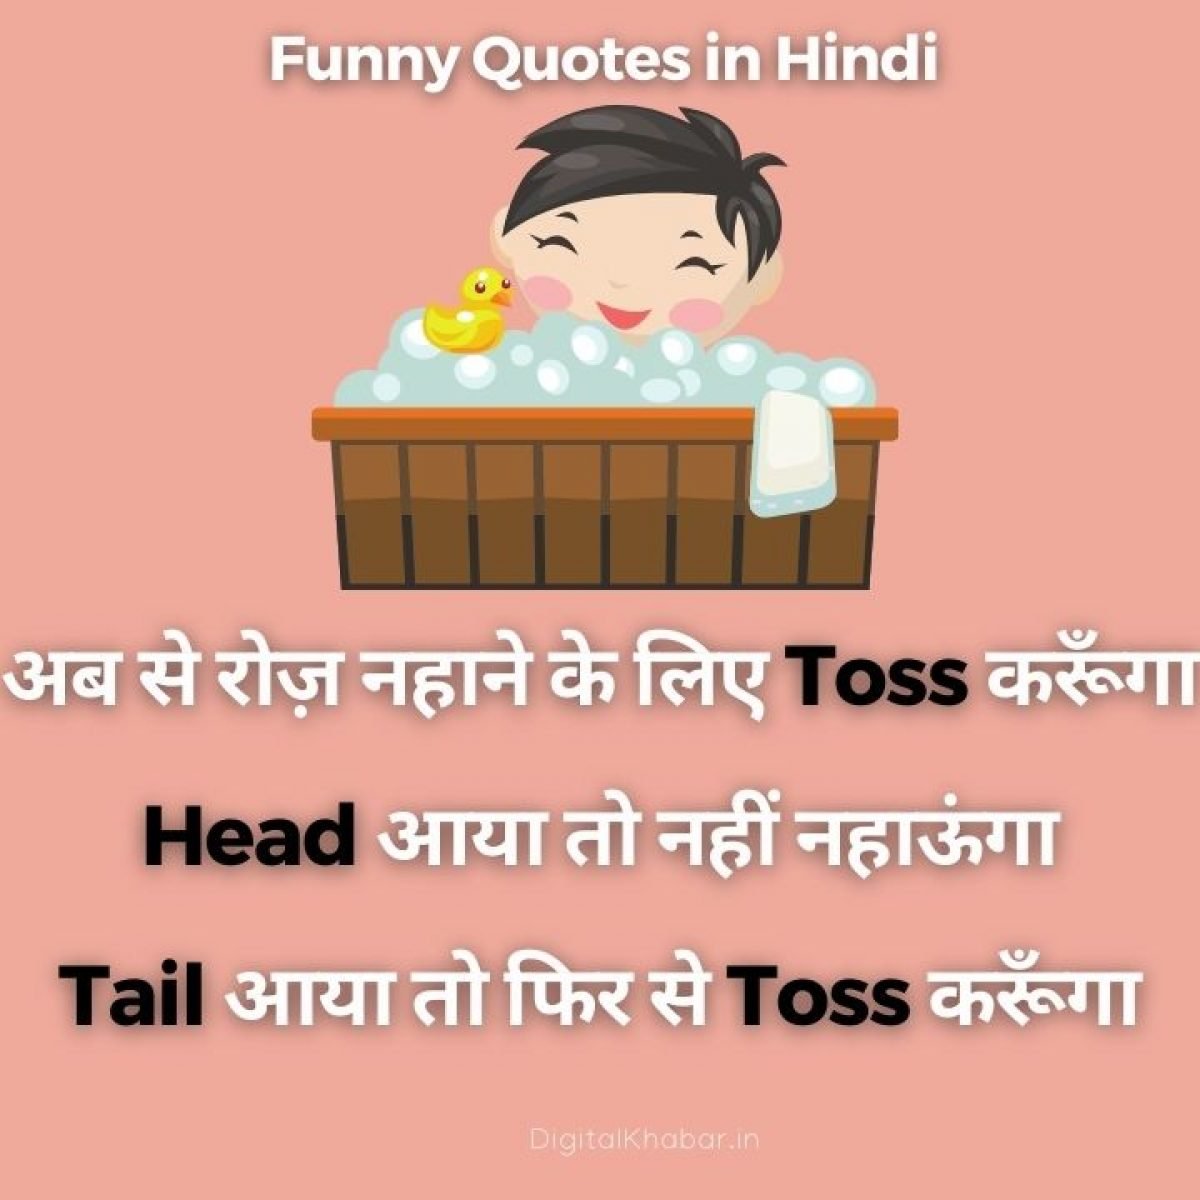 100 À¤«à¤¨ À¤ À¤ À¤¸ Funny Quotes In Hindi For Whatsapp Status You use instagram as a social media app. funny quotes in hindi for whatsapp status